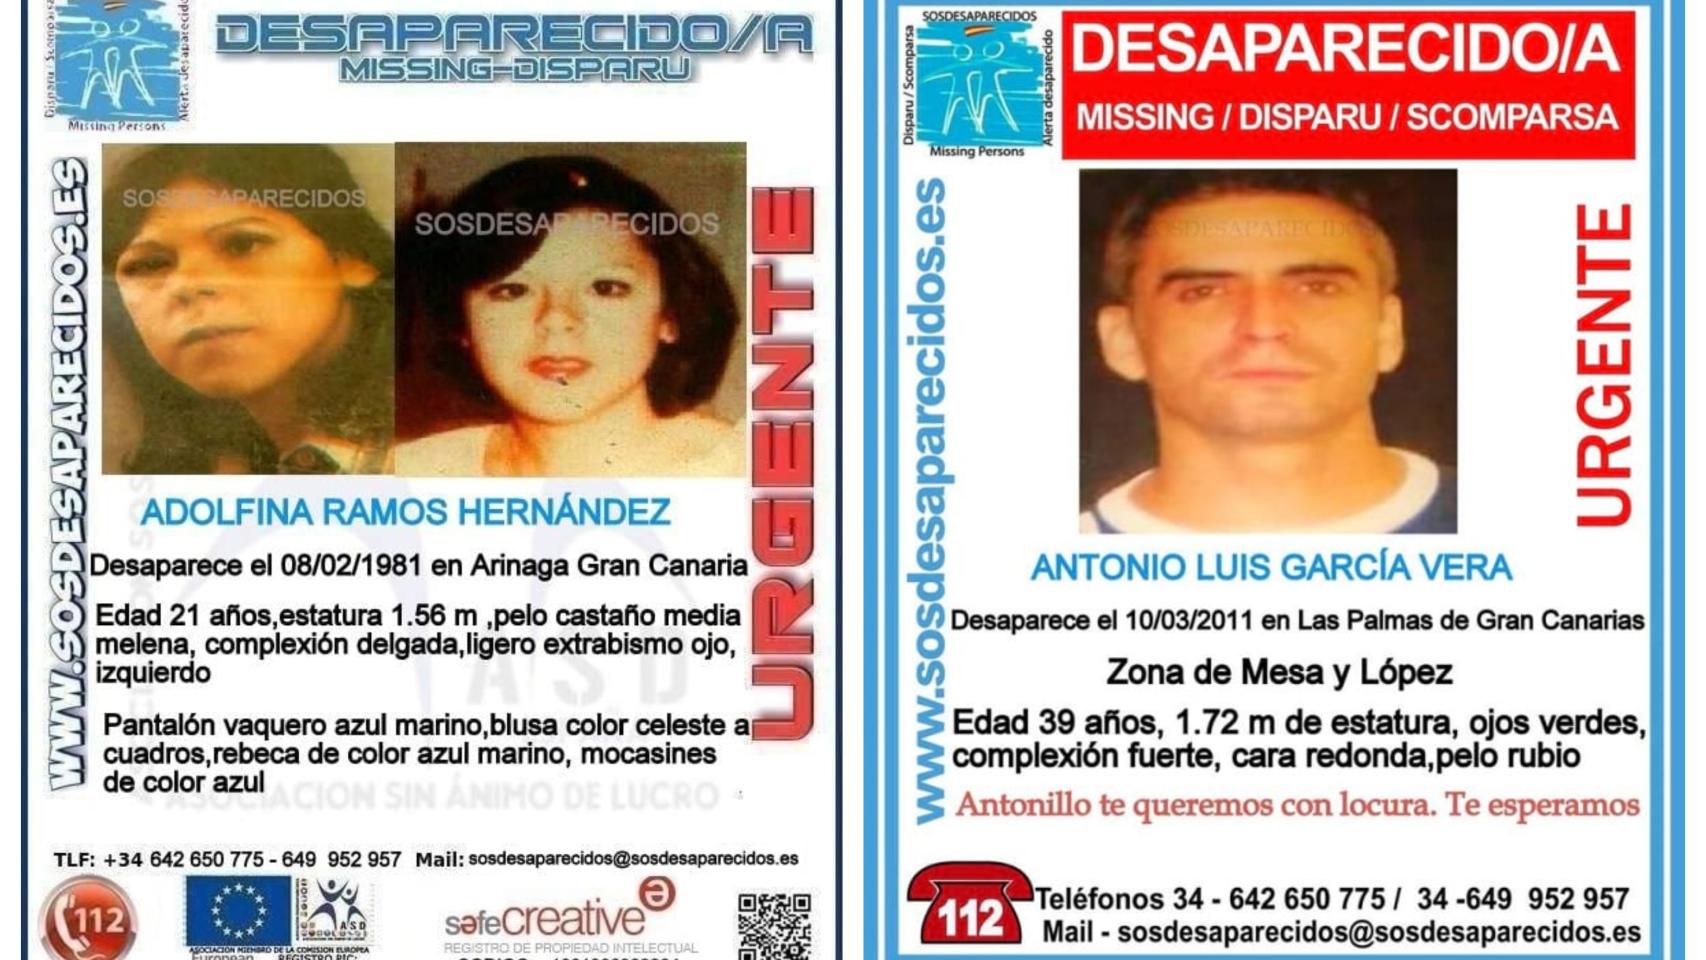 Adolfina Ramos Hernández y Antonio Luis García Vera, desaparecidos